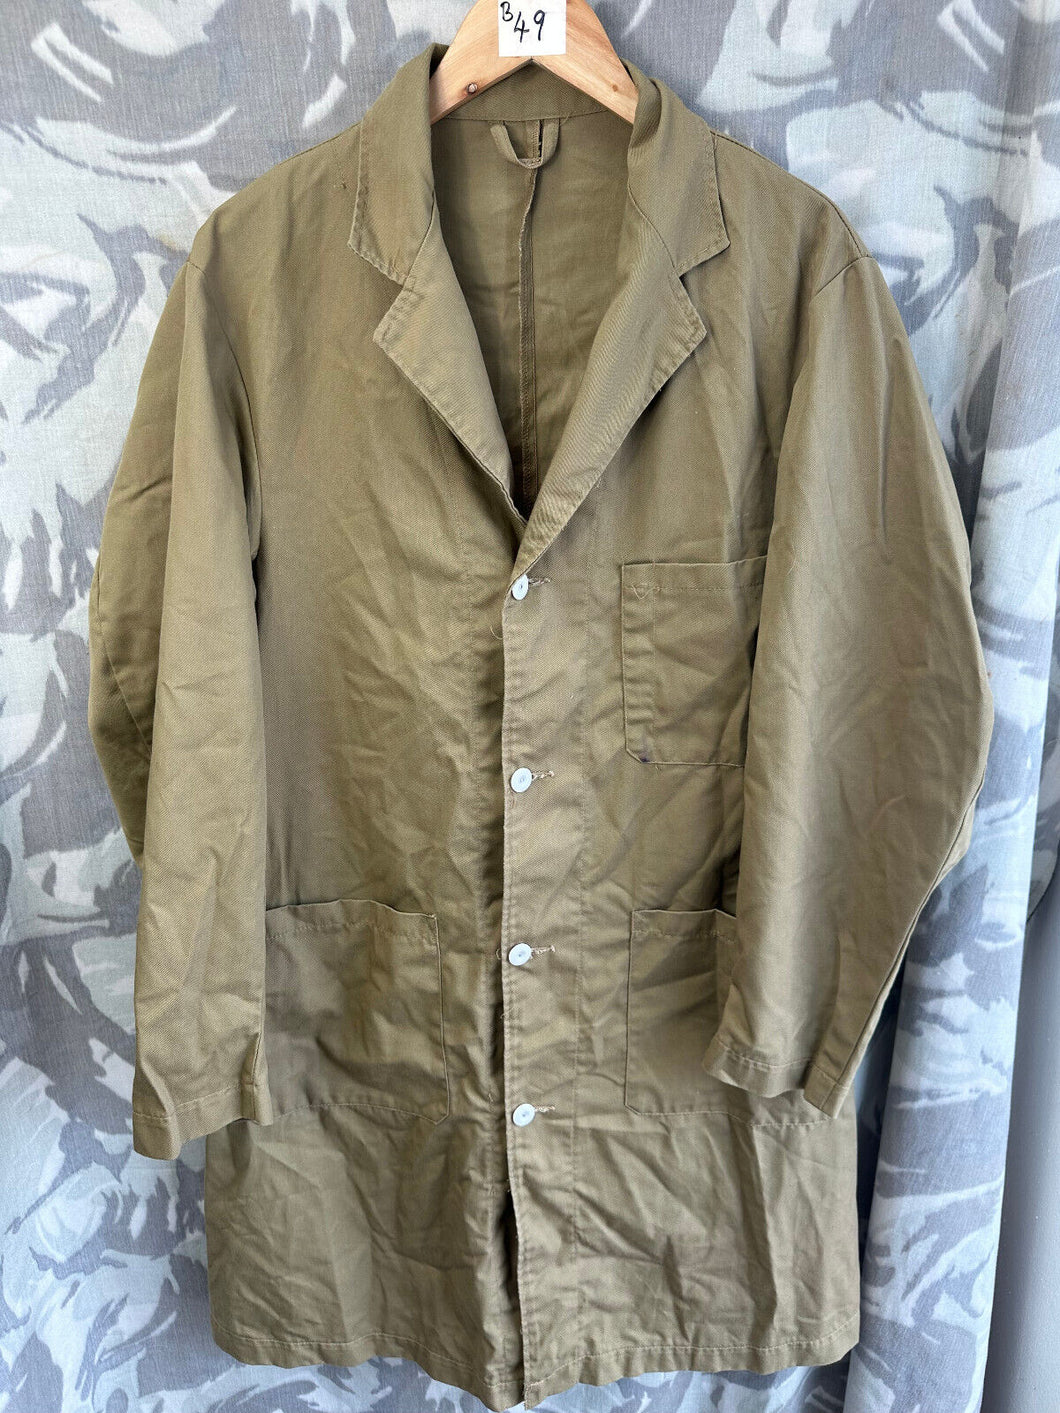 Original British Army Man's Khaki Overall Working Coat - WW2 Style - 180/100